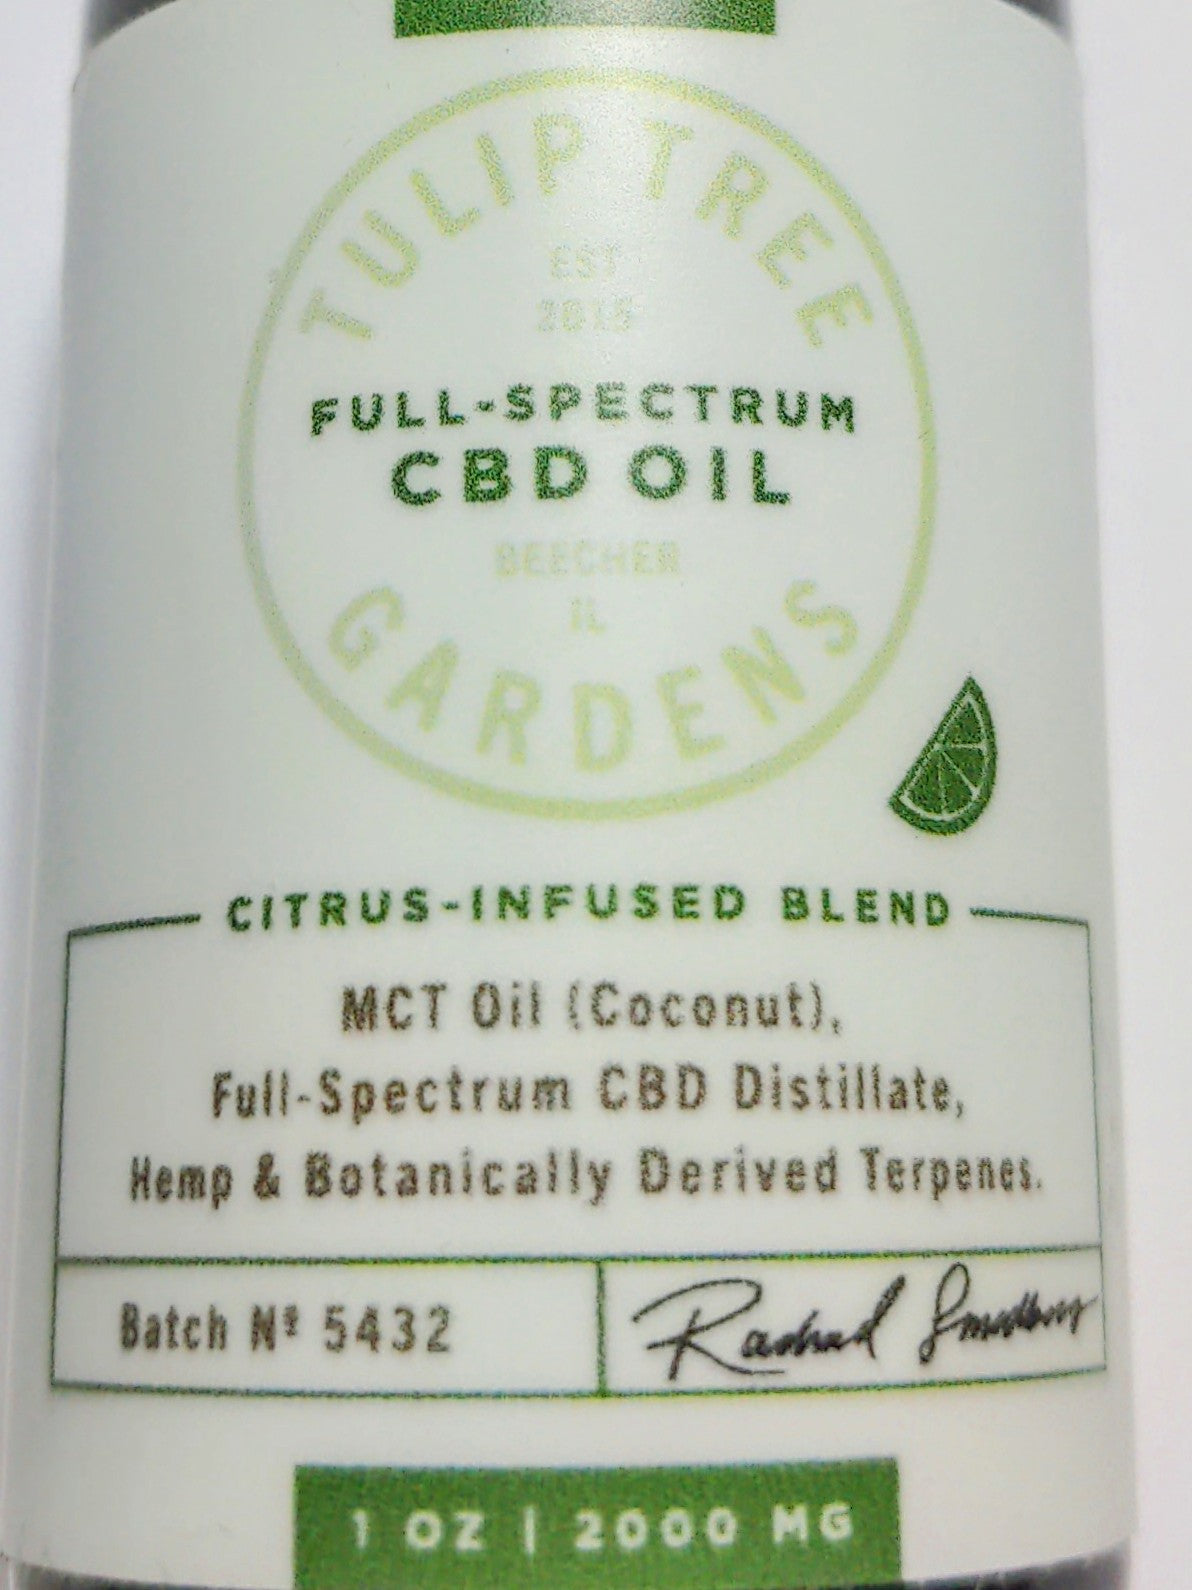 *Tulip Tree Gardens 2000mg Full Spectrum CBD Oil - CITRUS Blend - From Seed to Bottle